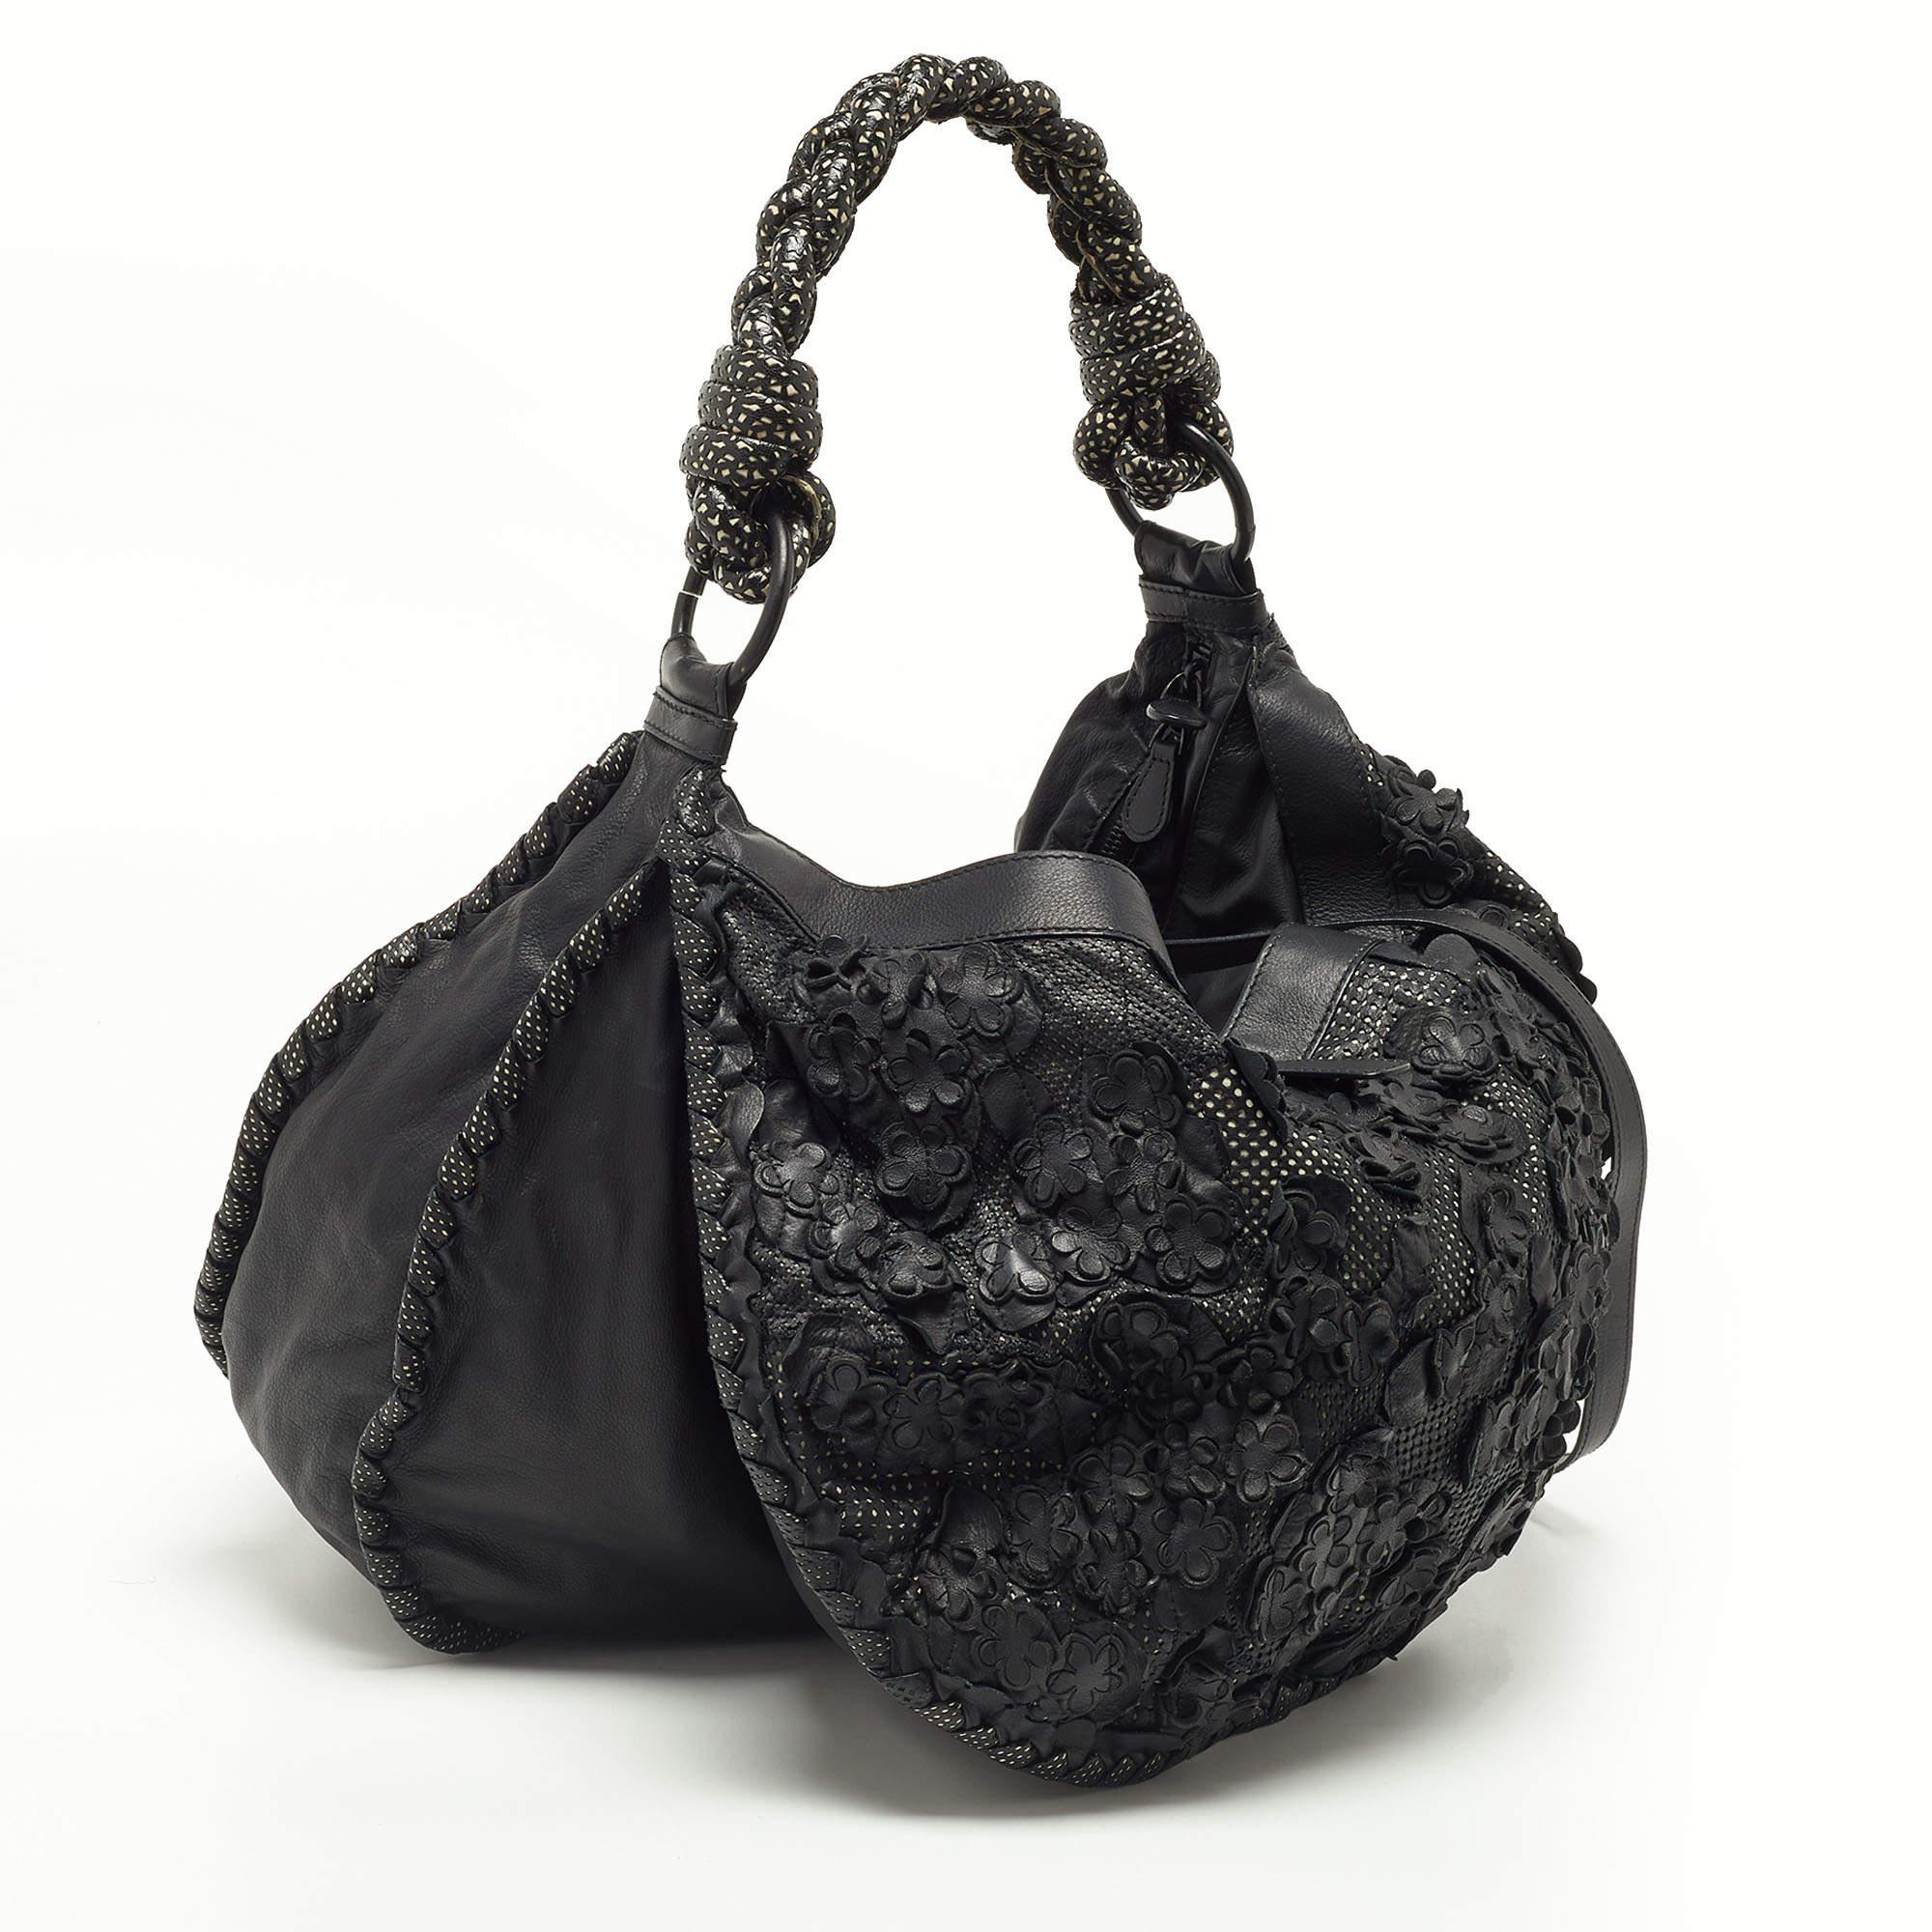 Stilvolle Handtaschen hinterlassen immer einen modischen Eindruck. Kombinieren Sie diese Designer-Hobo mit Ihrer raffinierten Arbeitskleidung sowie mit schicken Freizeitlooks.

